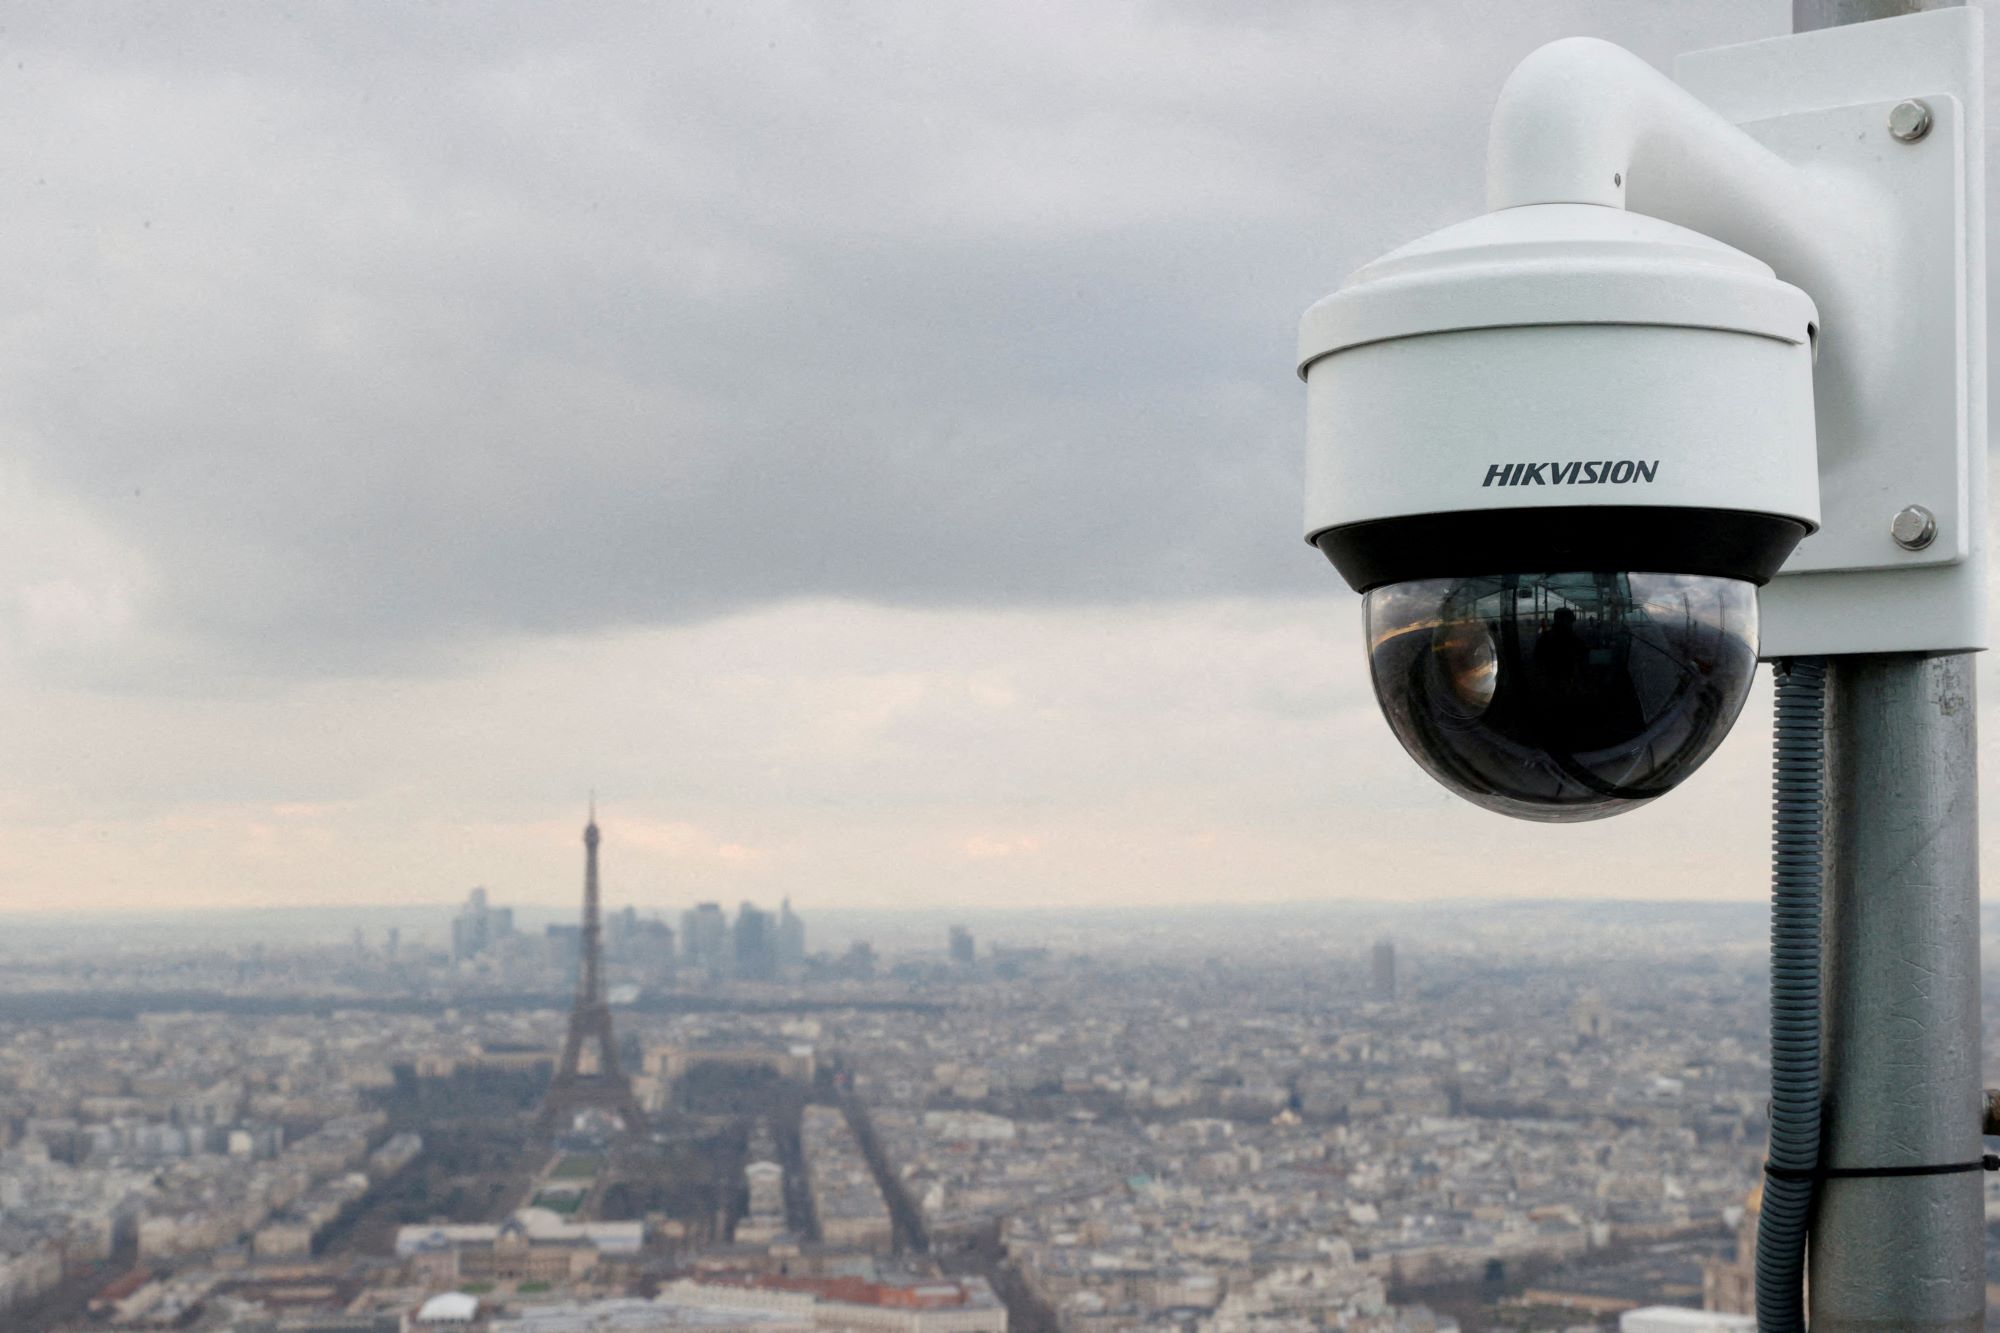 Les services secrets français mettent en garde contre le risque d’attentats terroristes à Paris – WN24.cz – World News 24